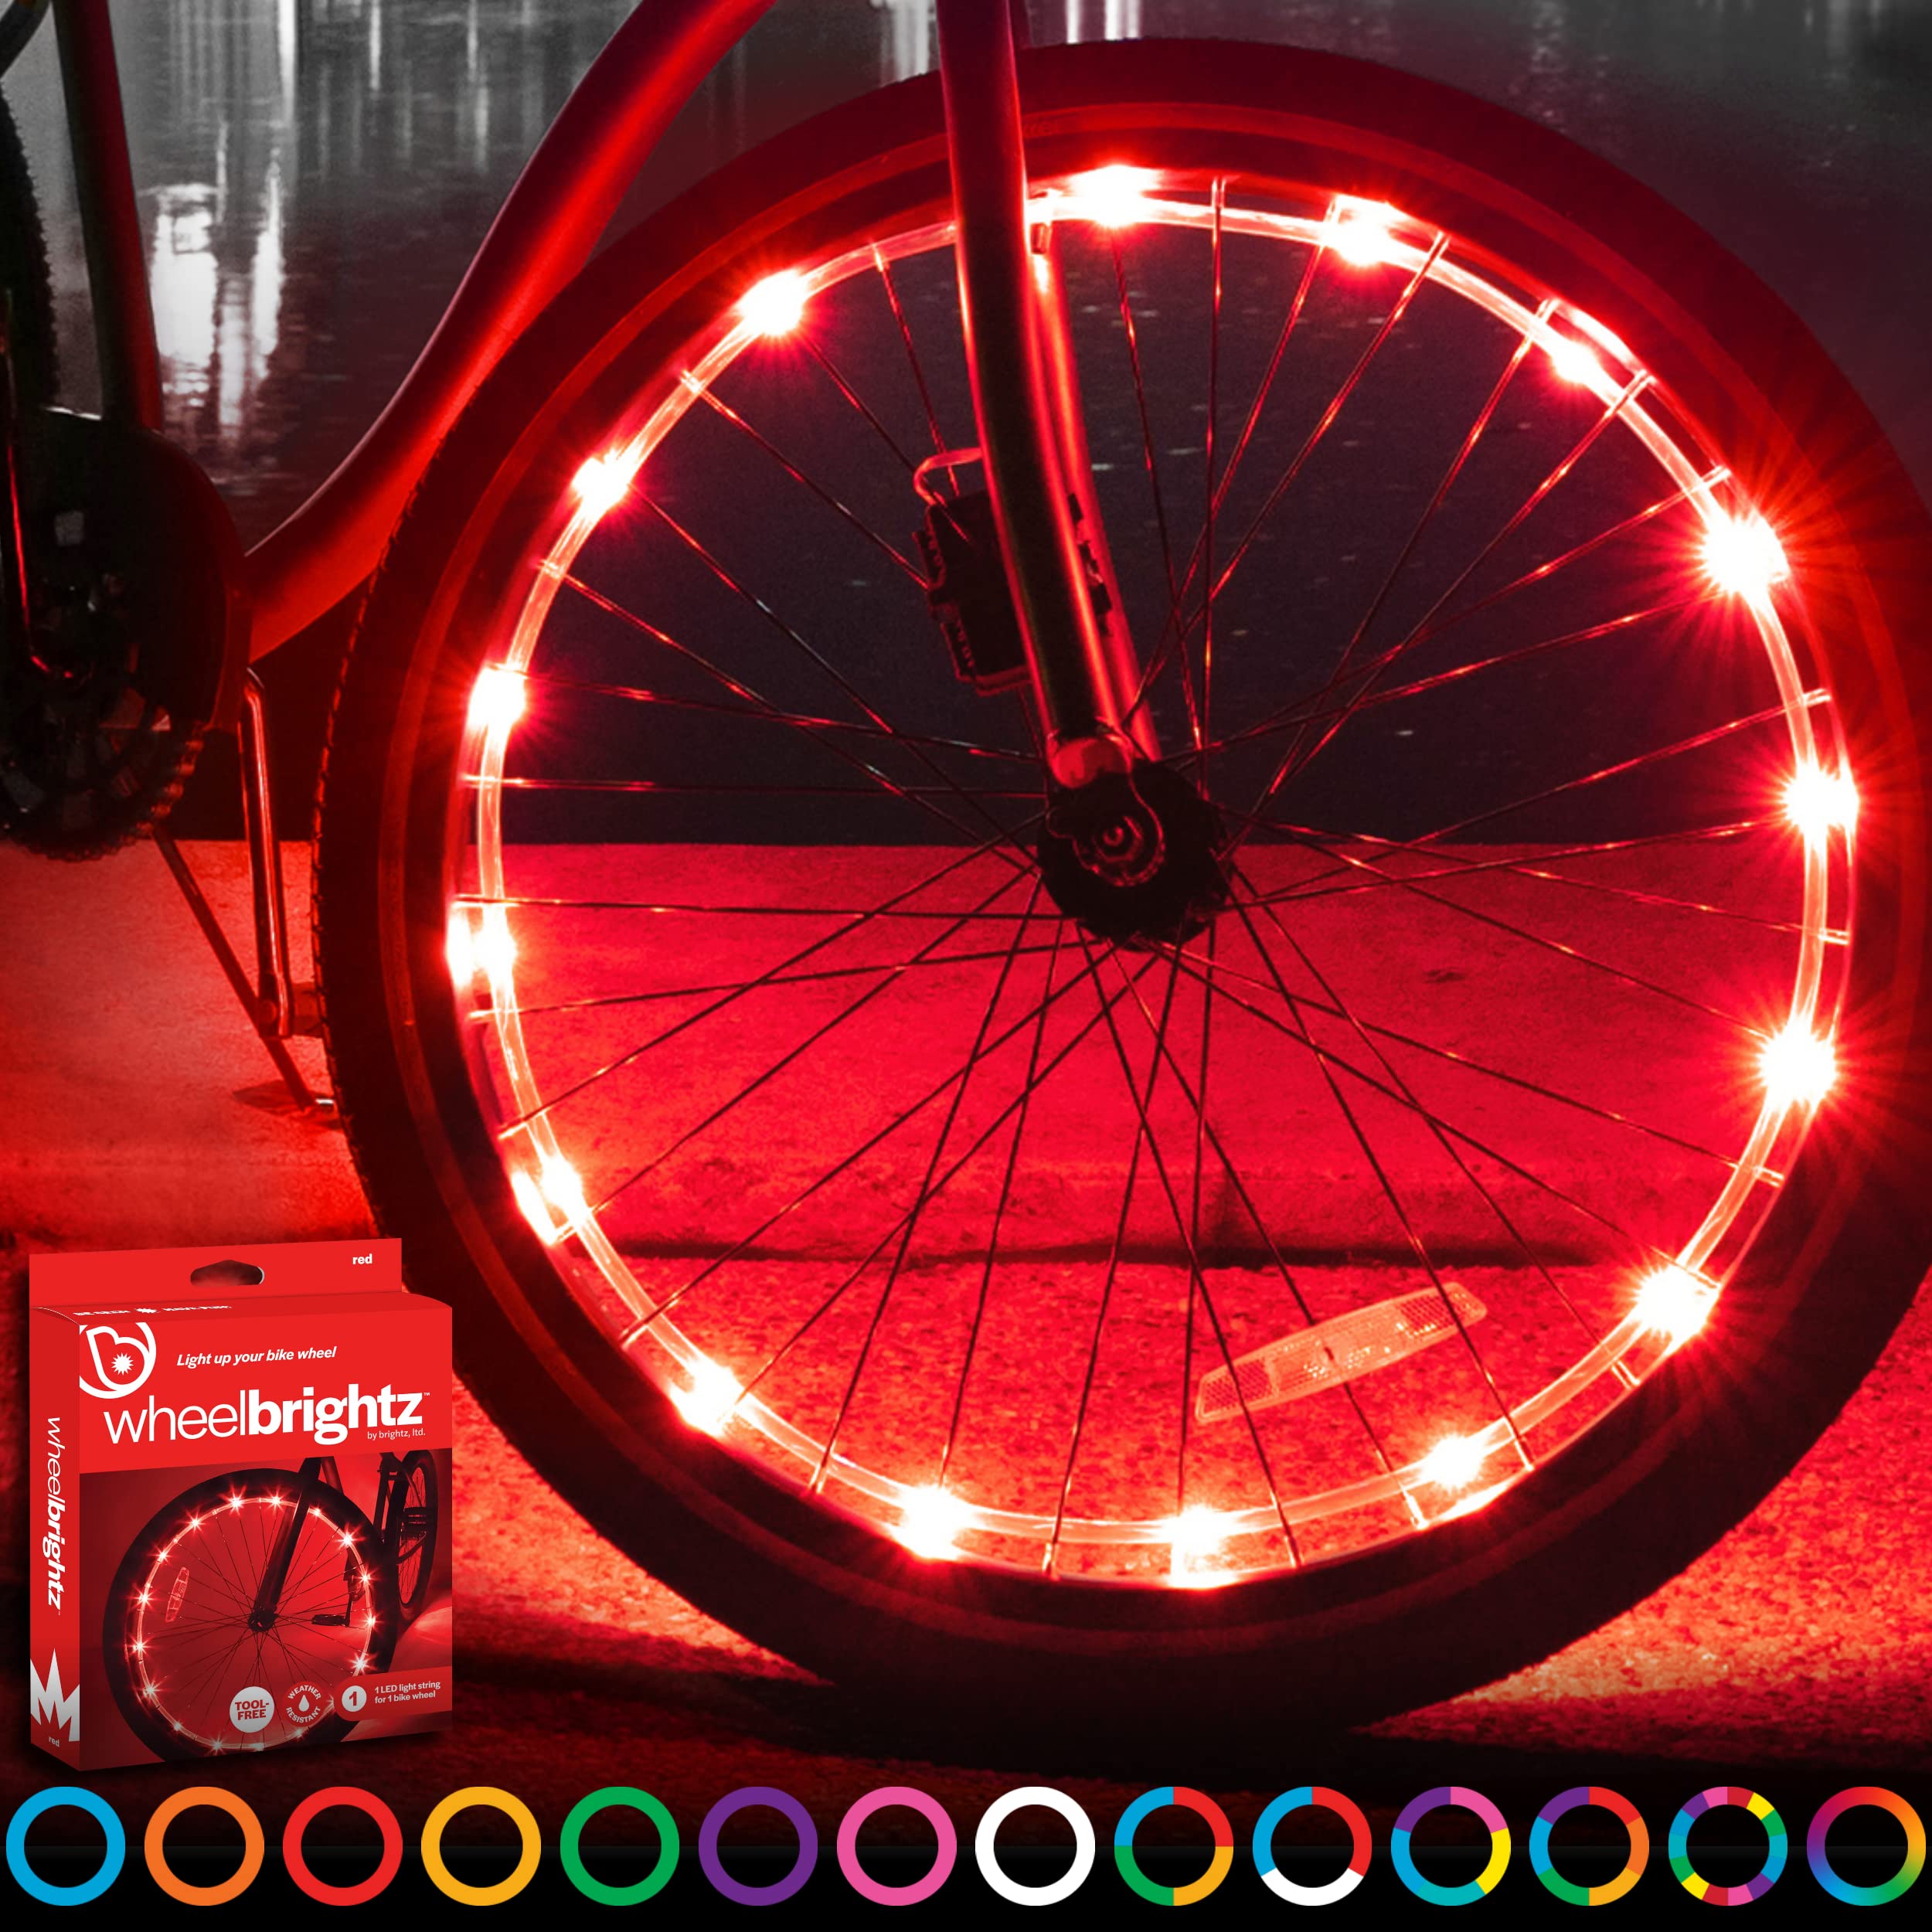 Brightz WheelBrightz LED Bike Wheel Light, Red - Pack of 1 Tire Light - Bike Wheel Lights Front and Back for Night Riding - Batt